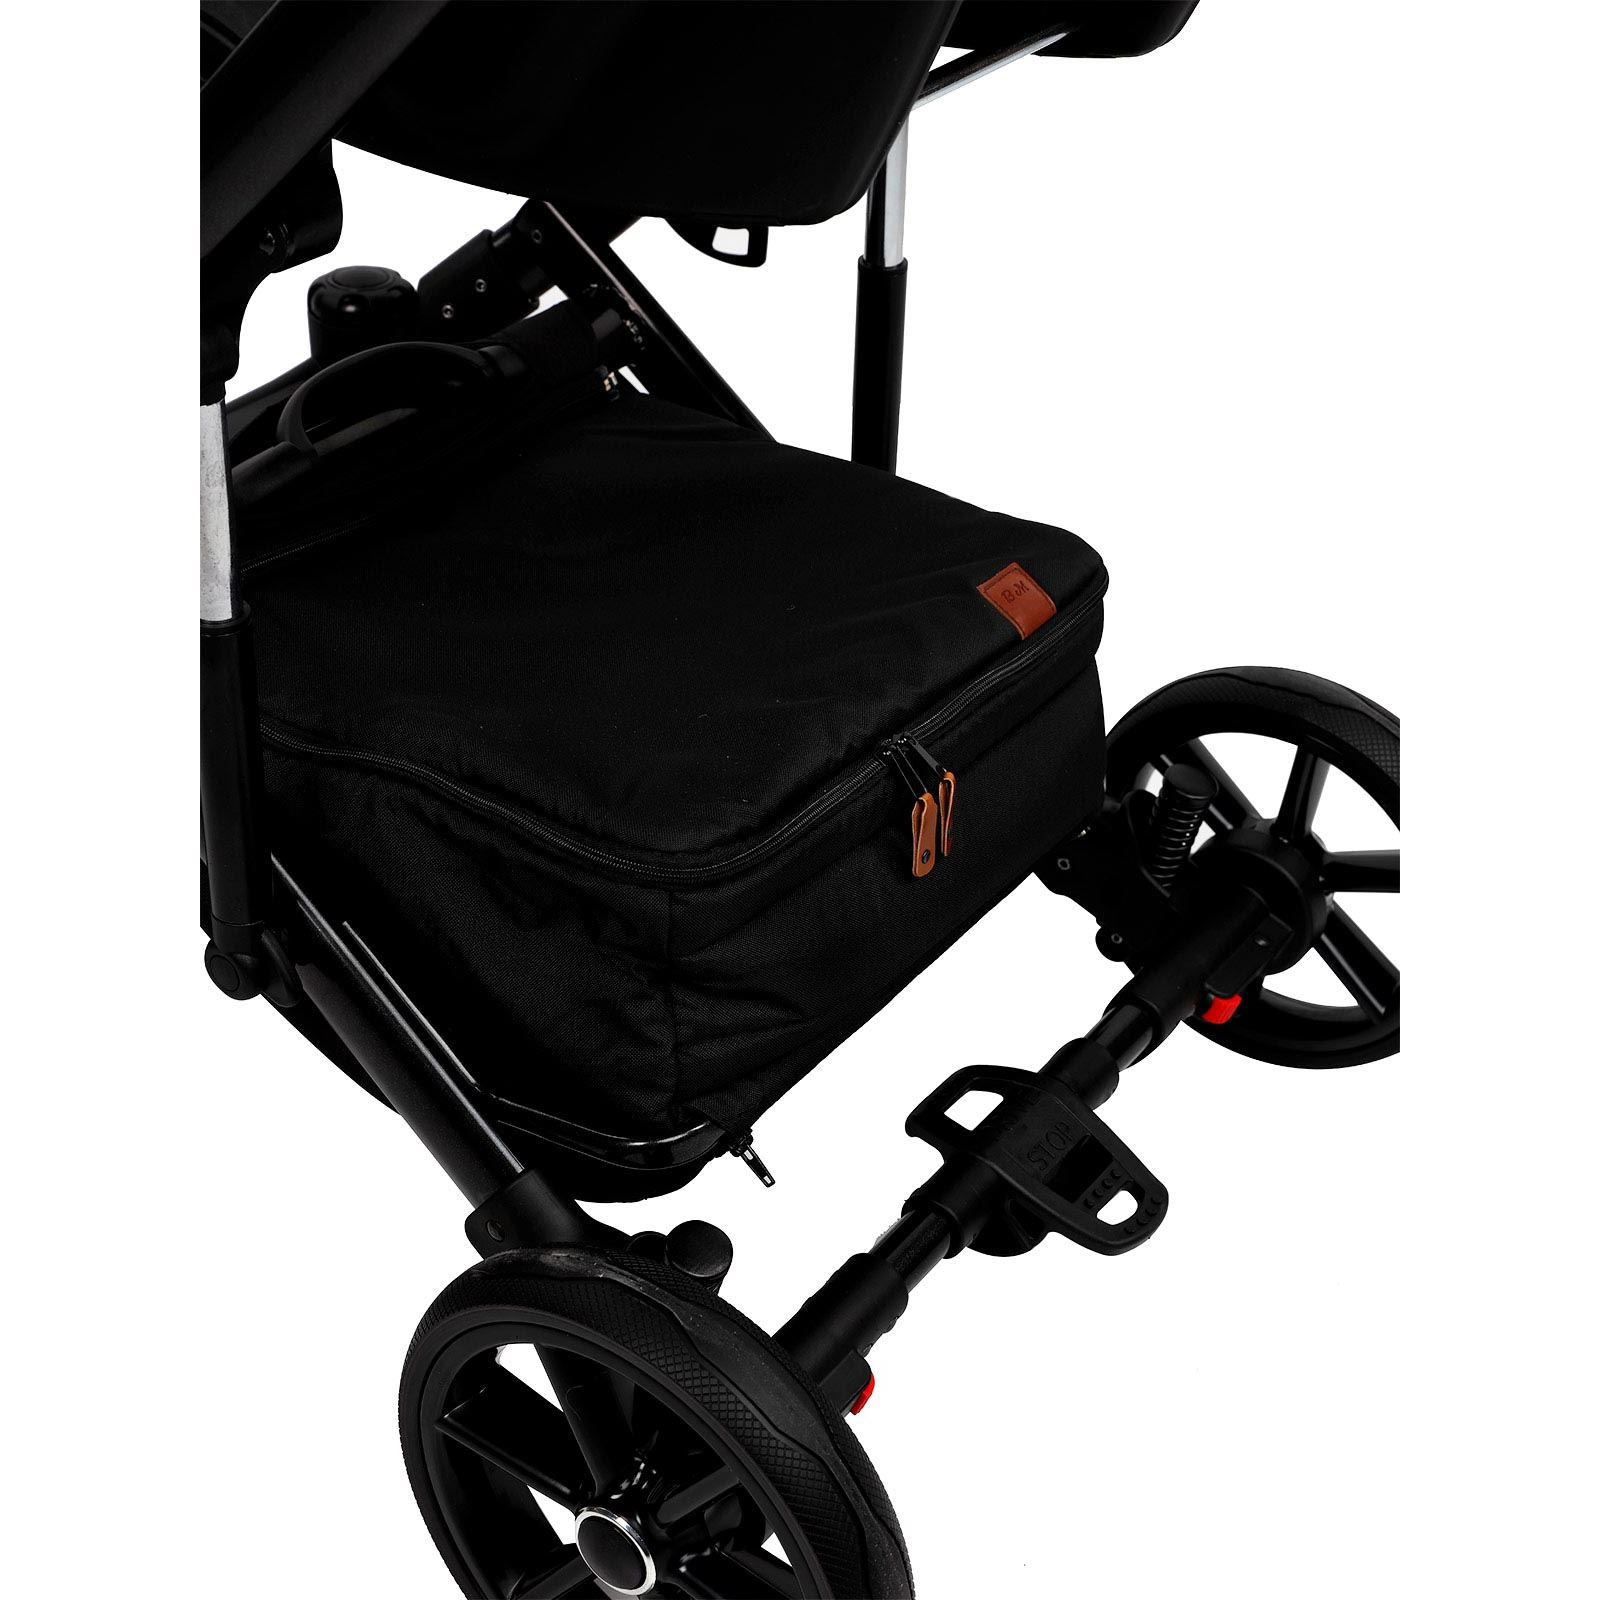 Baby Merc Travel sistem Bebek Arabası La Rosa Black Çanta Hediyeli!